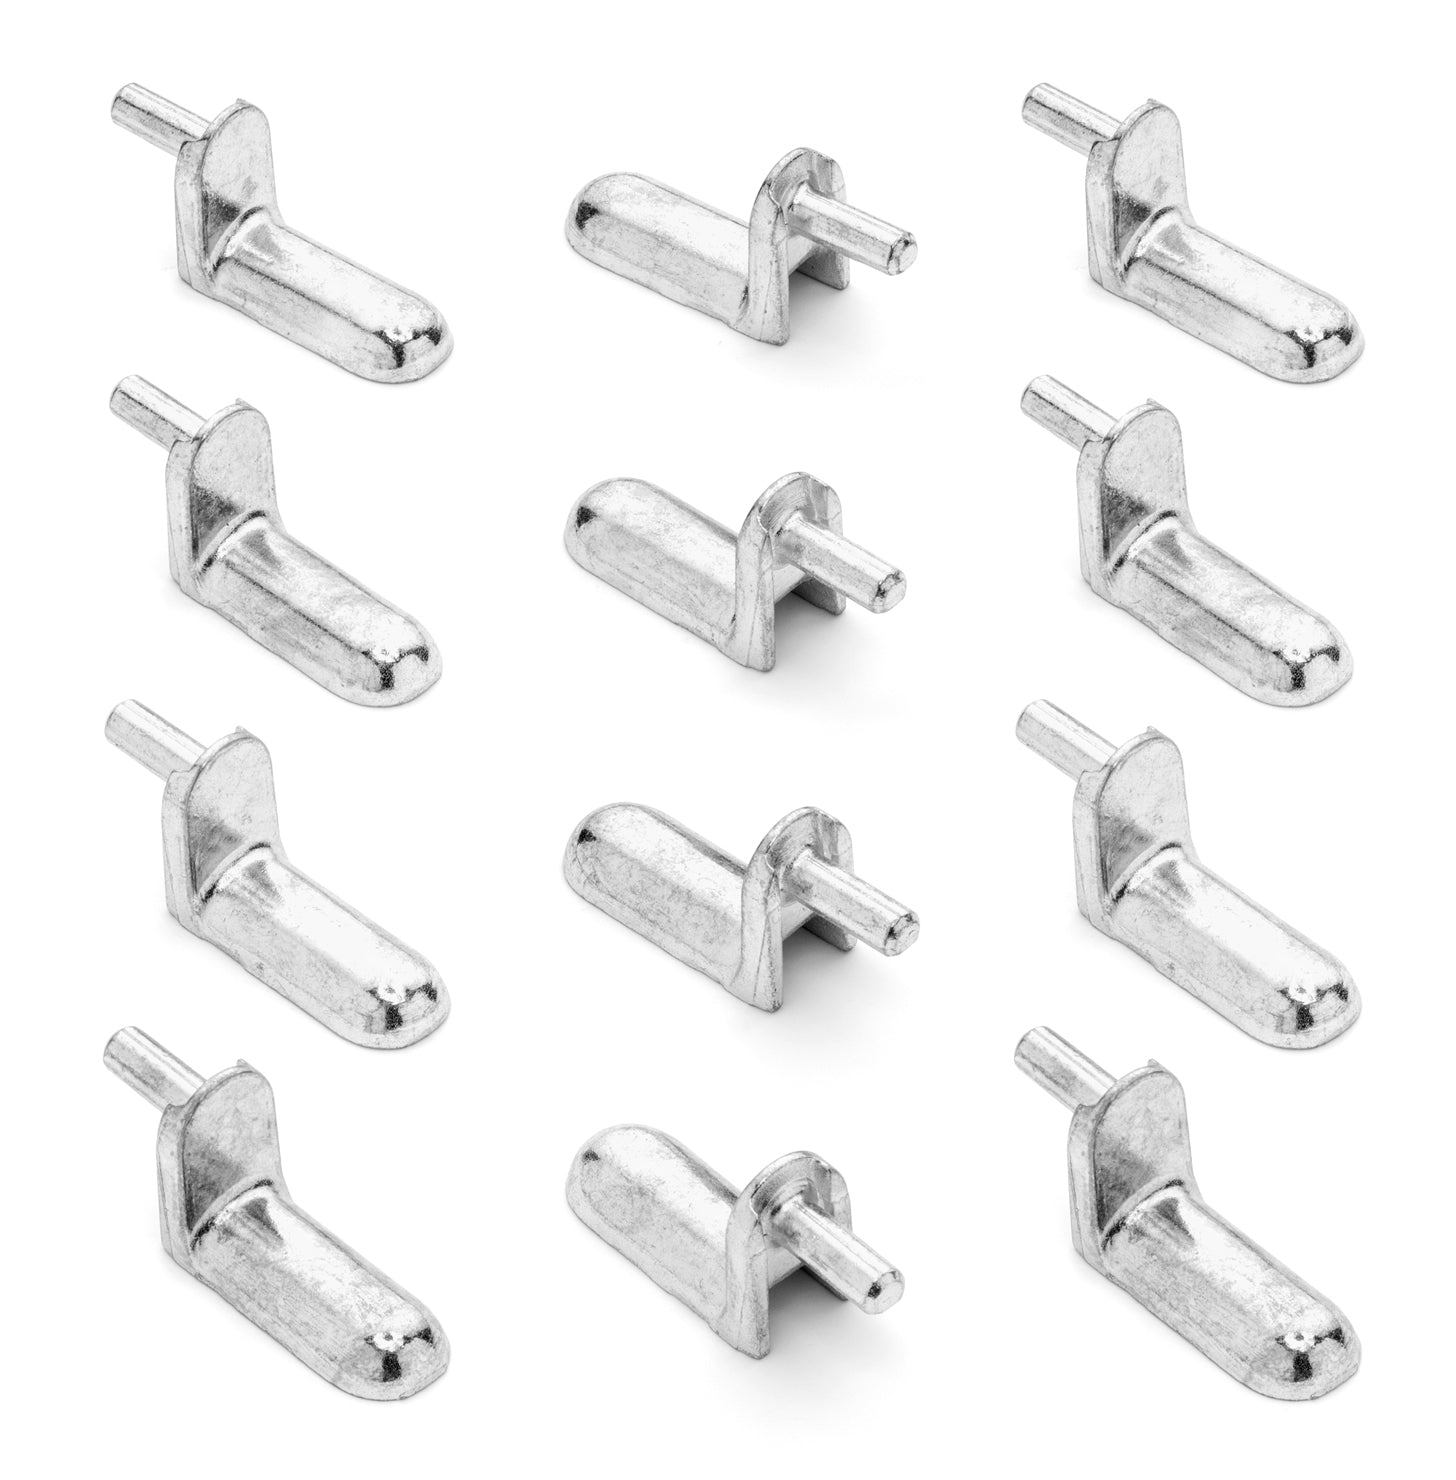 Ikea Besta Shelf Pins 113301 12 Pack Furnitureparts Com